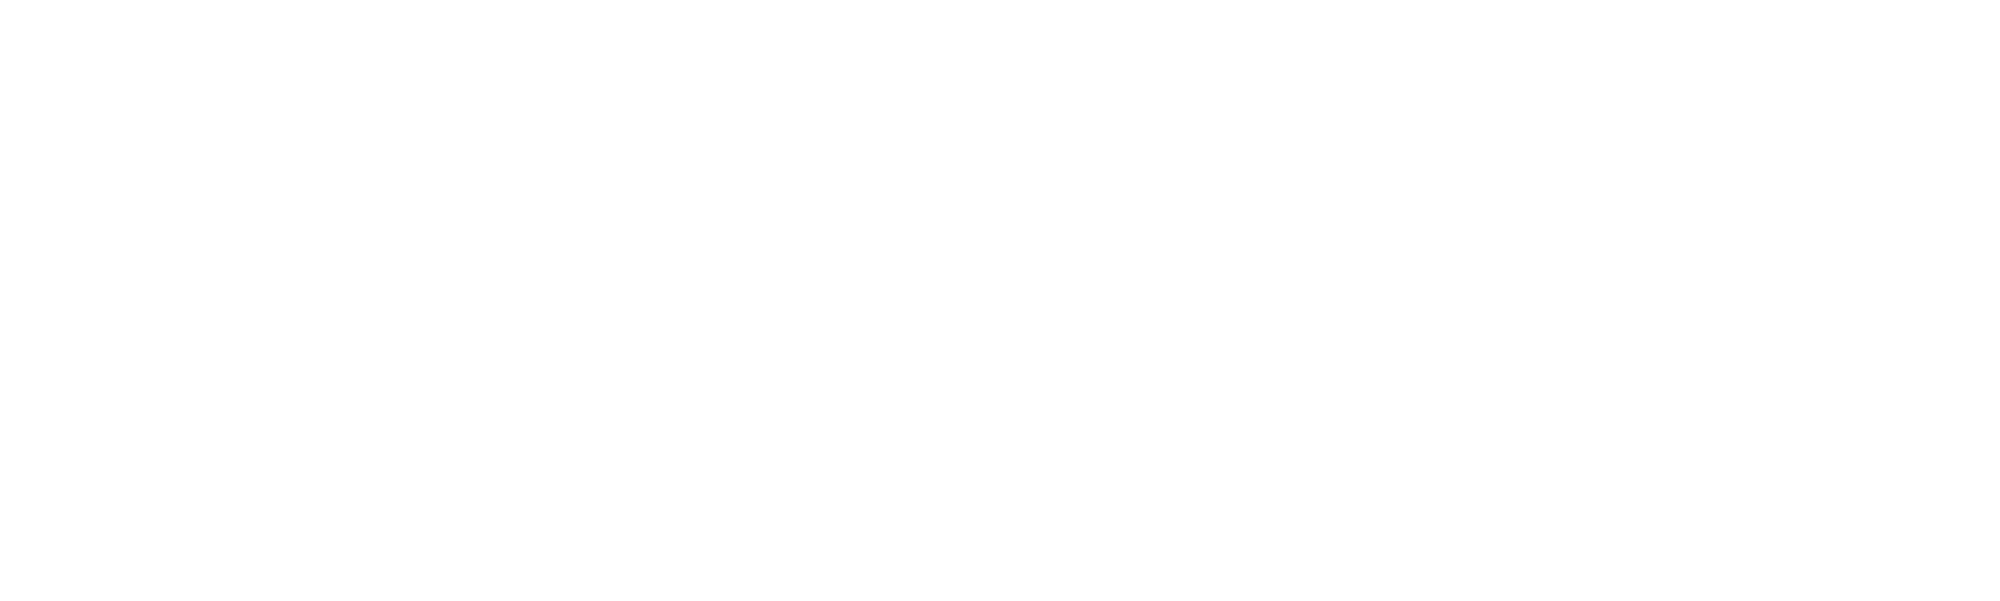 Rabbit Hutches